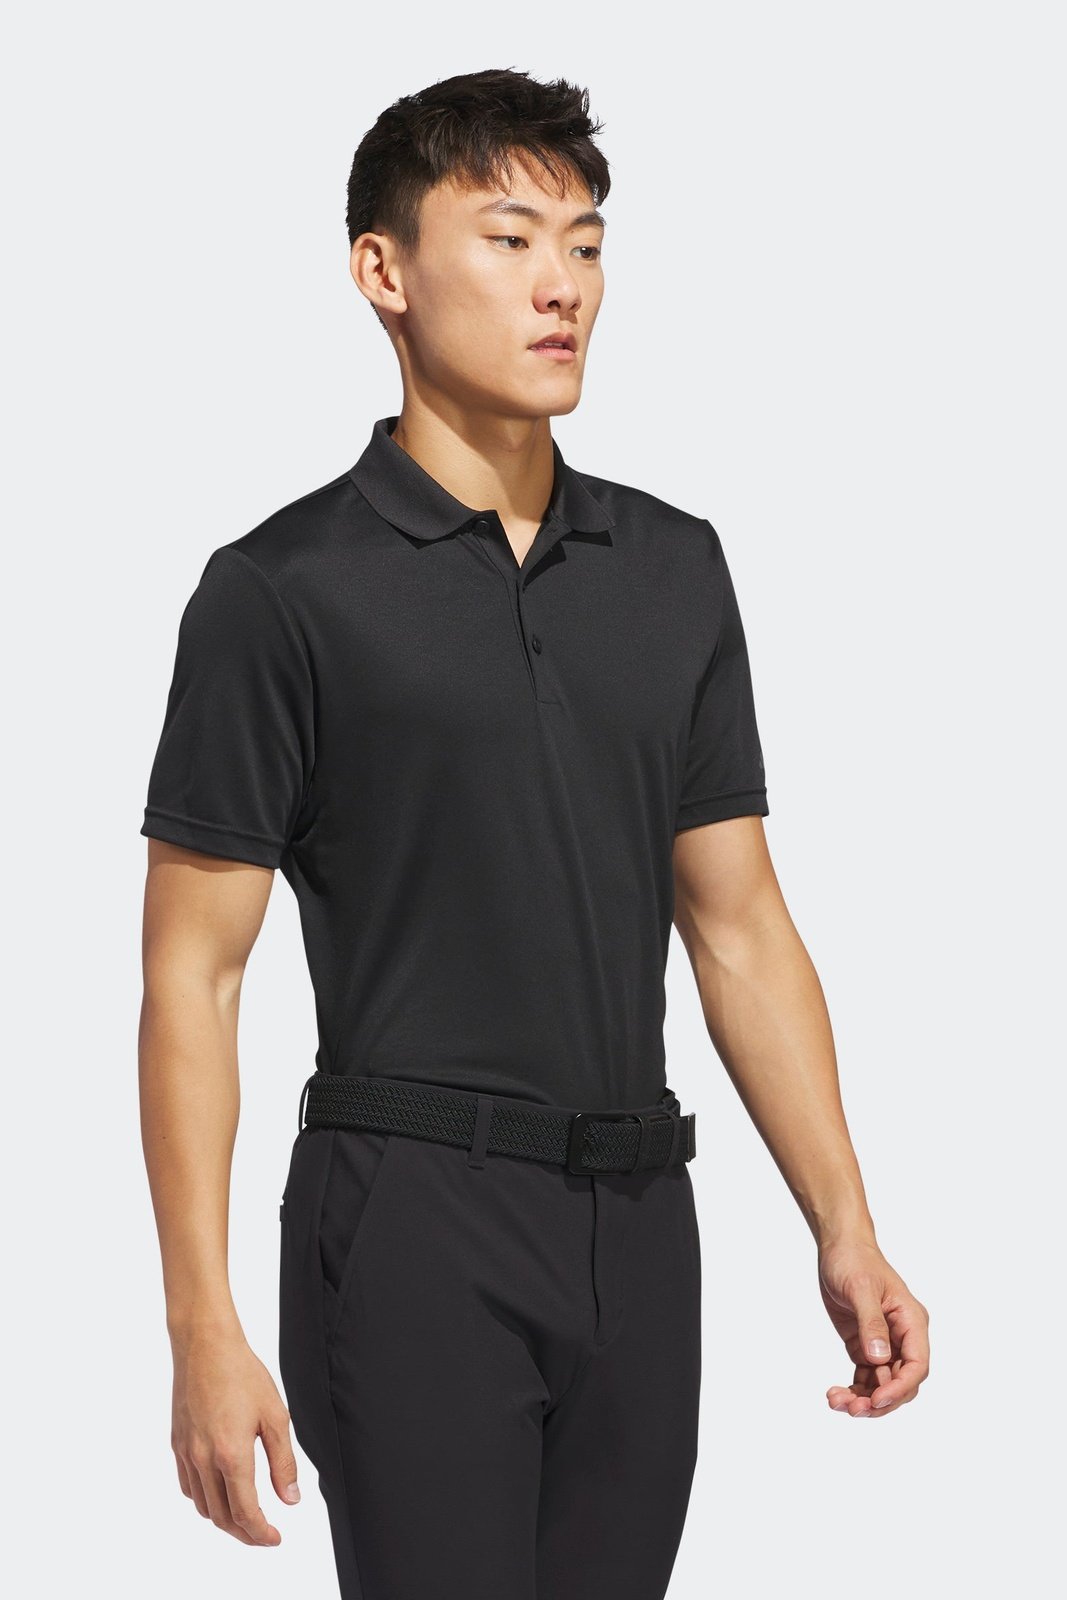 חולצת פולו לגברים CORE ADIDAS PERFORMANCE PRIMEGREEN בצבע שחור